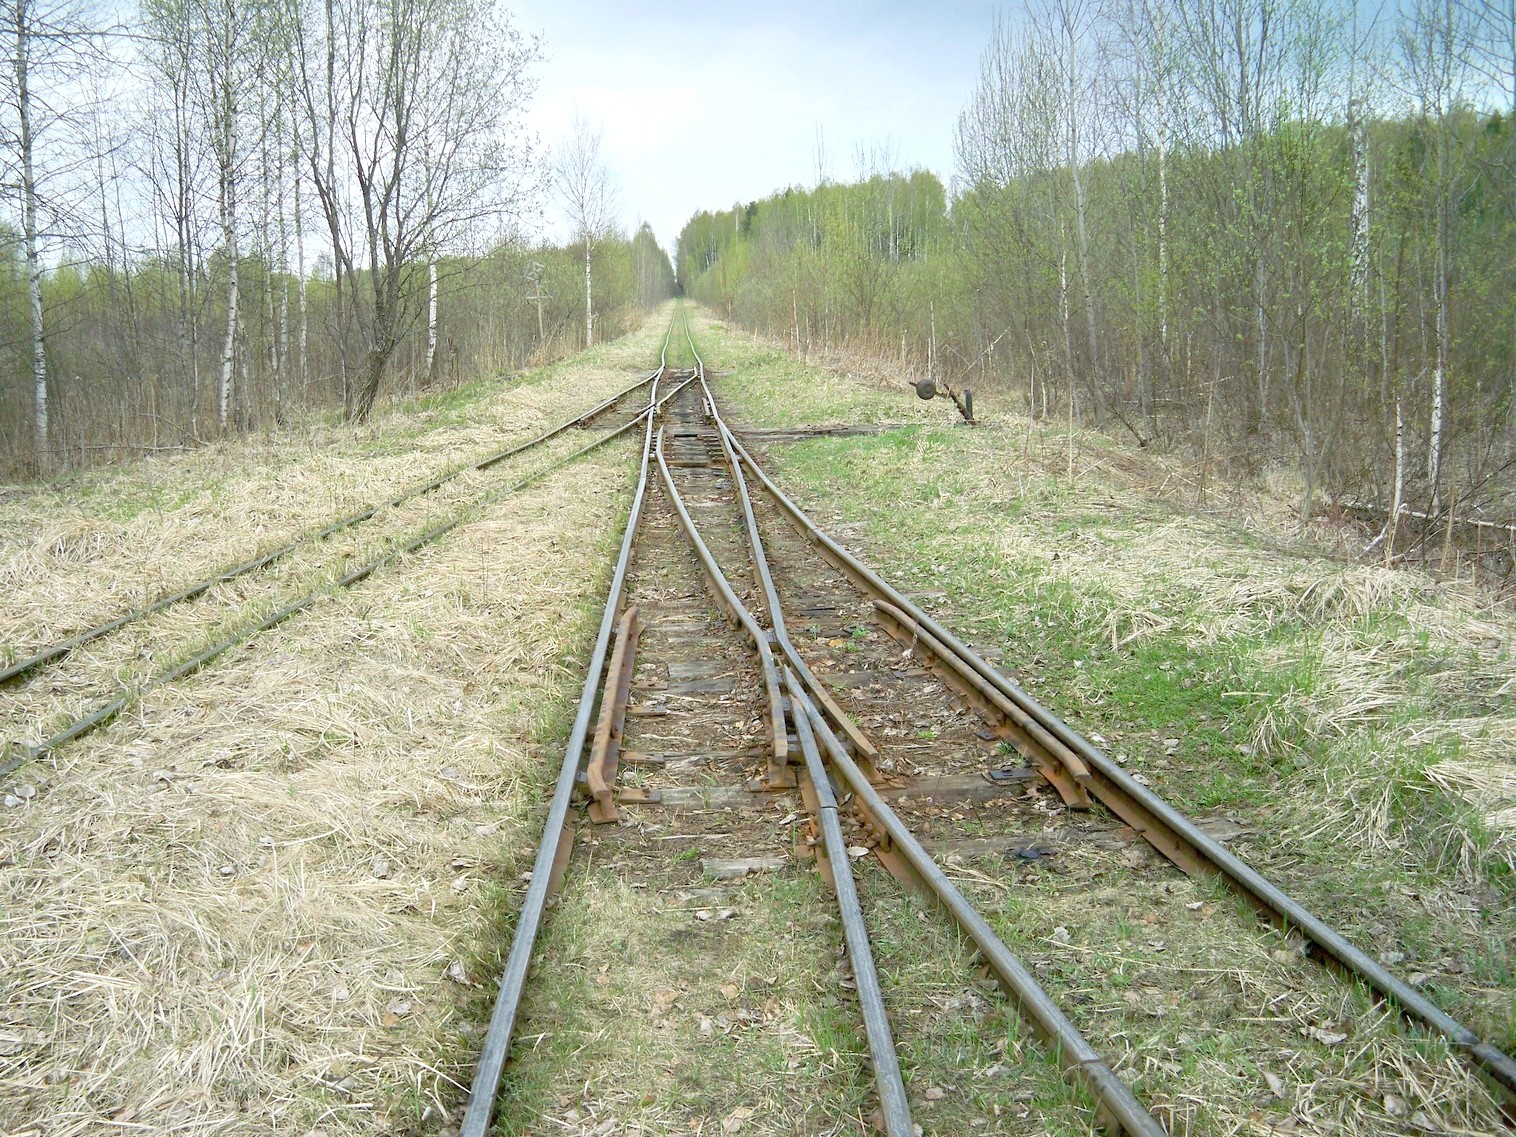 Узкоколейная железная дорога Васильевского предприятия промышленного железнодорожного транспорта  — фотографии, сделанные в 2014 году (часть 15)